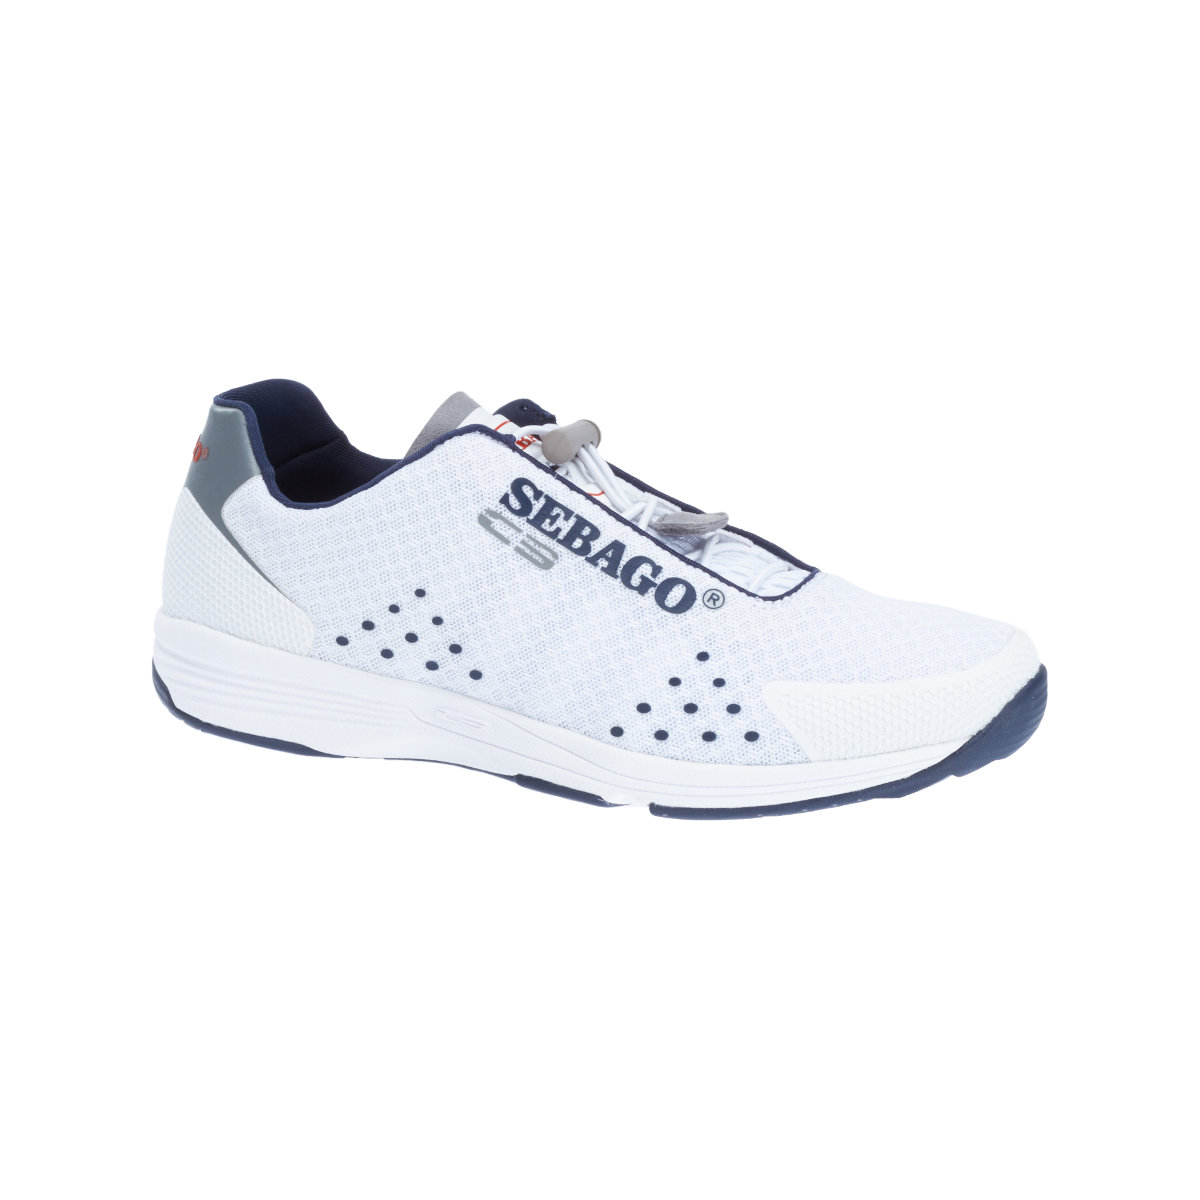 Sebago Cyphon Sea Sport chaussures à voile femme blanche, taille EU 38,5 (US 8)